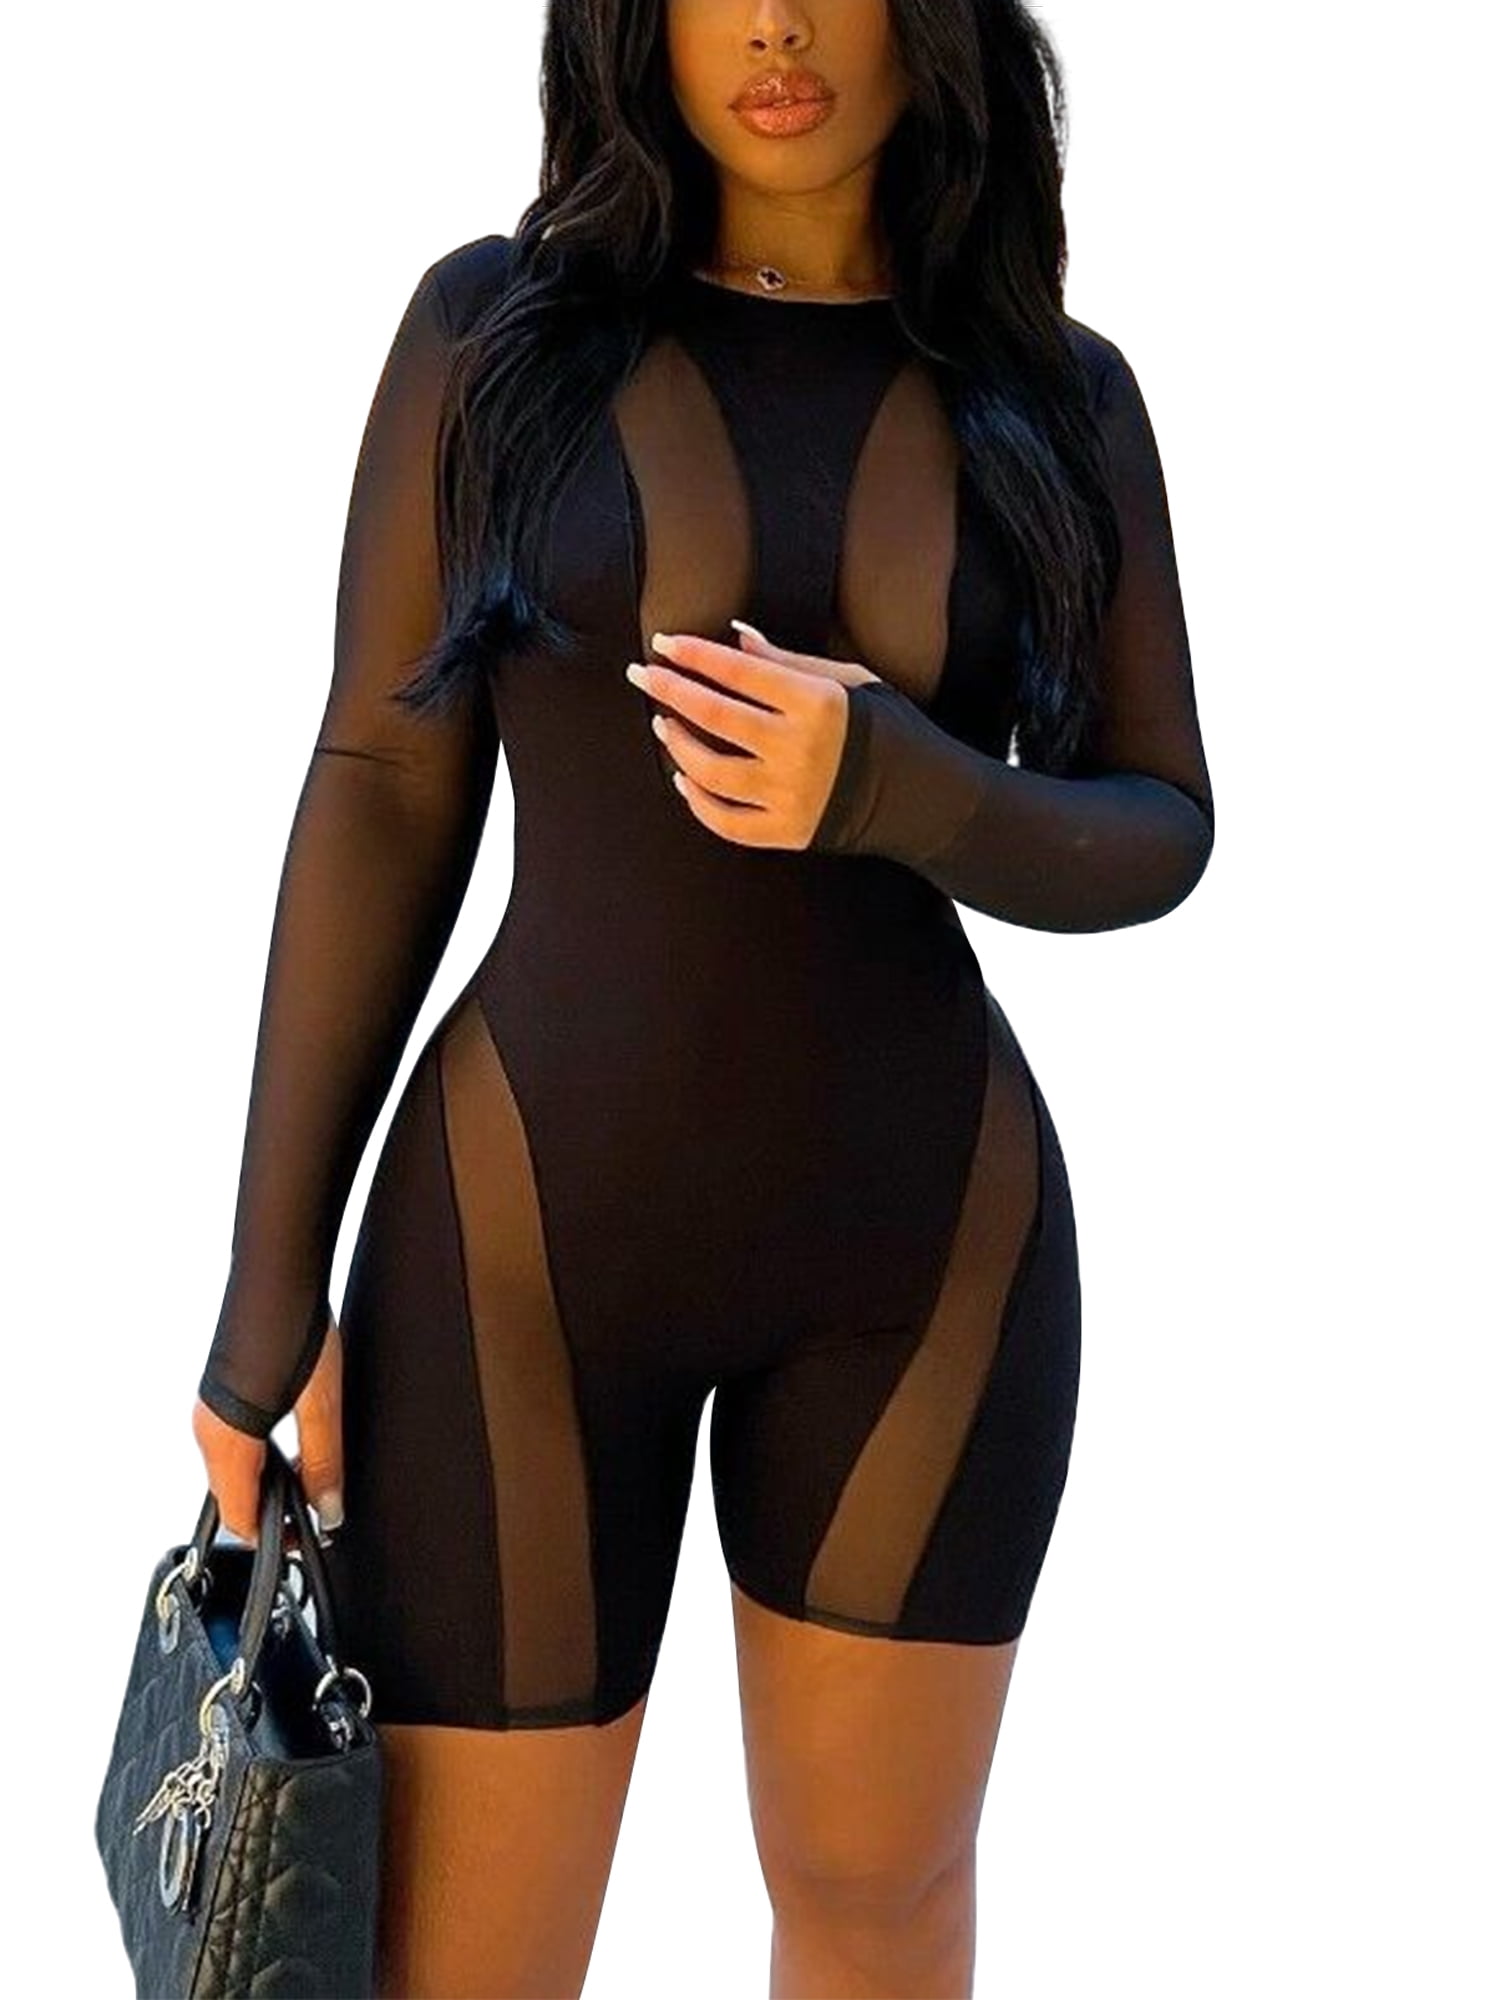 Womens Mesh Bodysuit Black Long Sleeve Bodysuit Round Neck Sheer